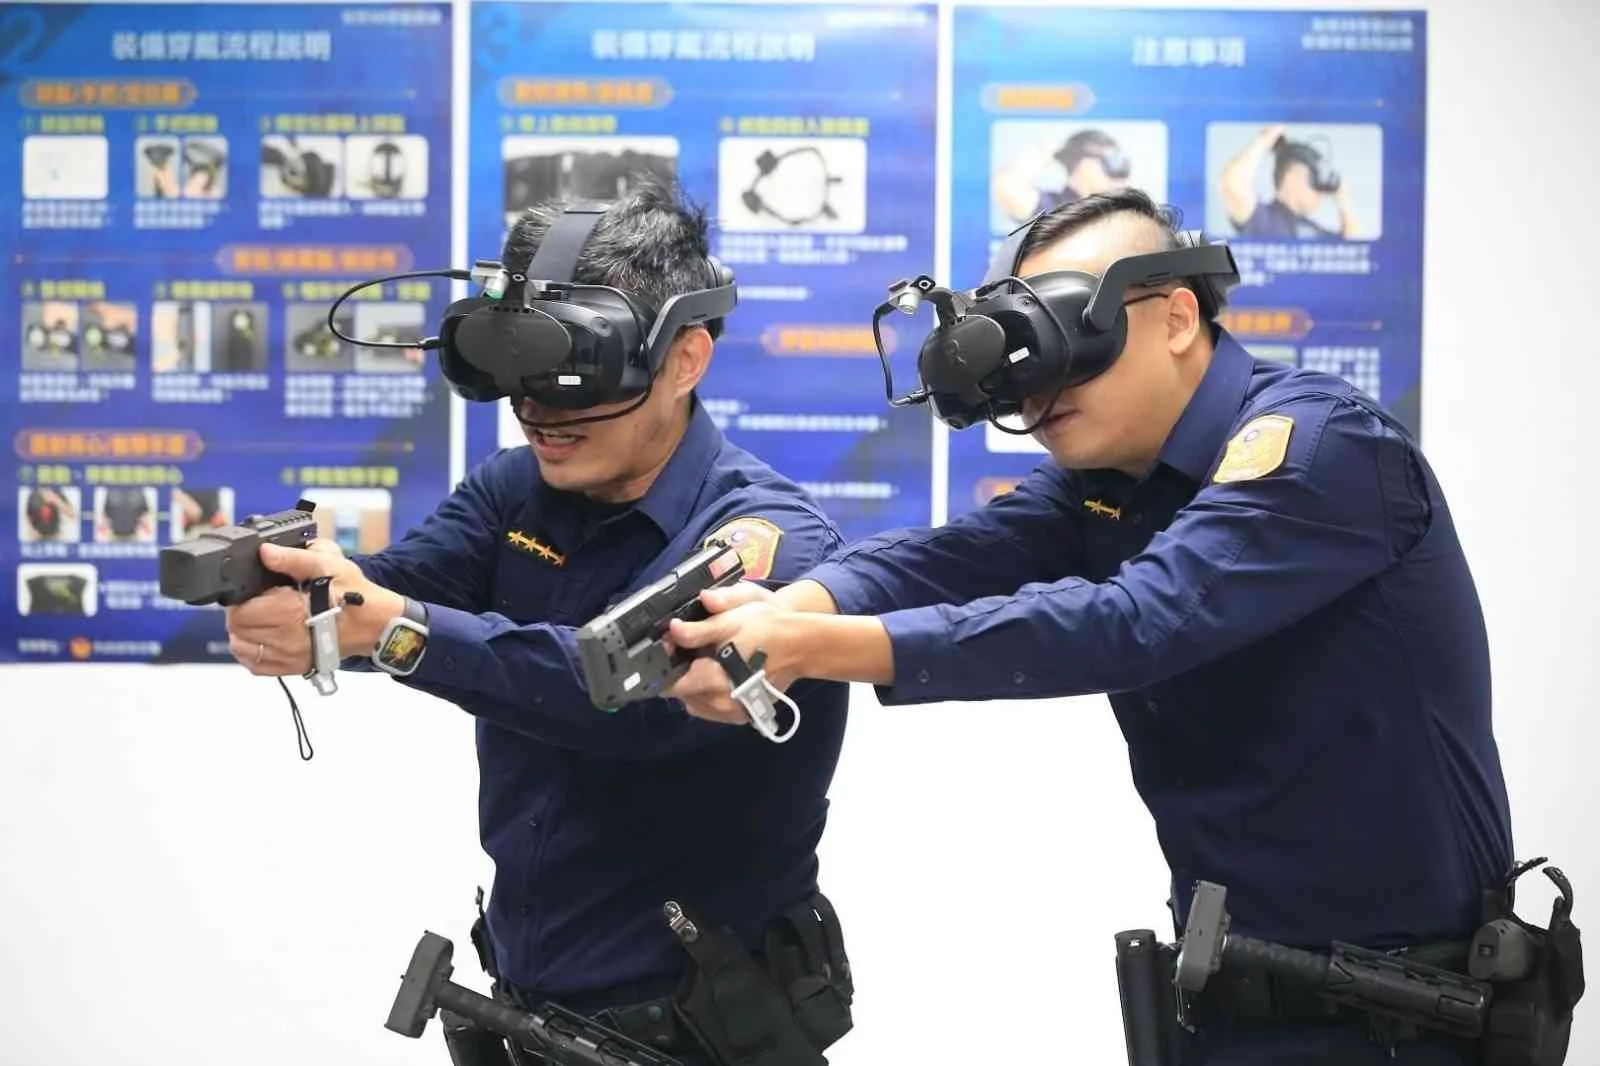 Tayvanda polislere sanal gerçeklikle eğitim